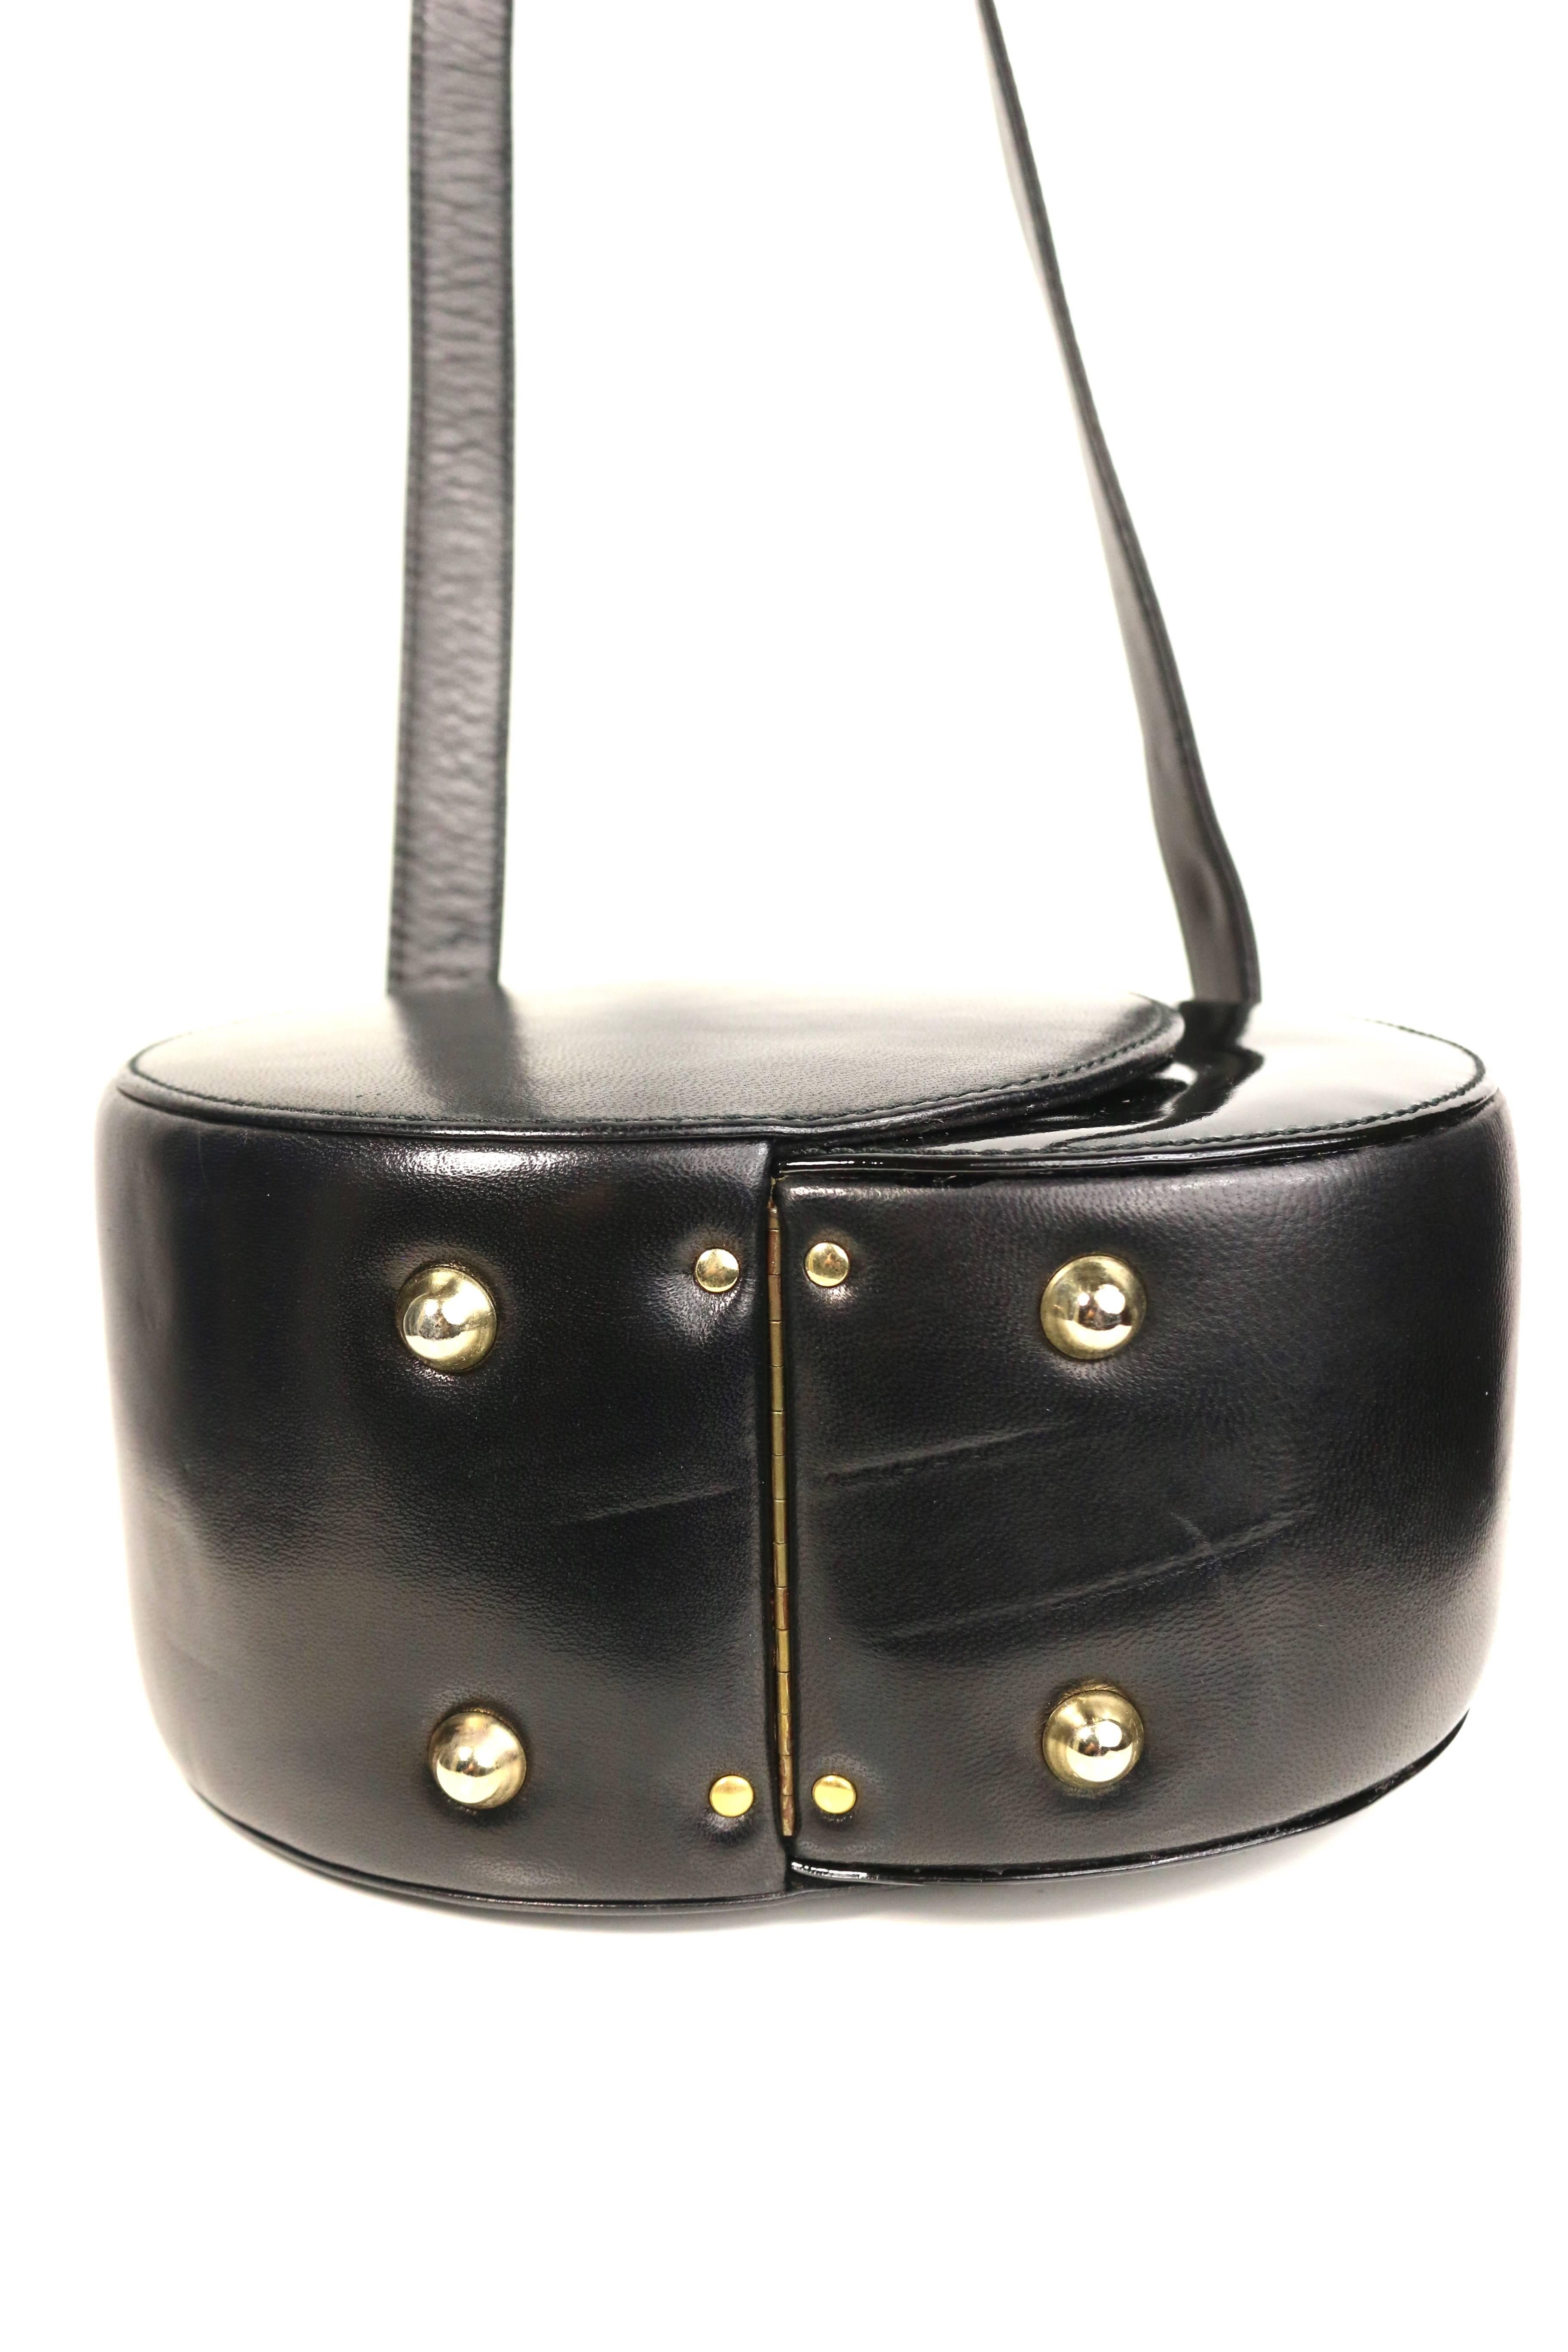 Franco Bellini Black Lambskin/Patent Leather Round Shoulder Bag 3